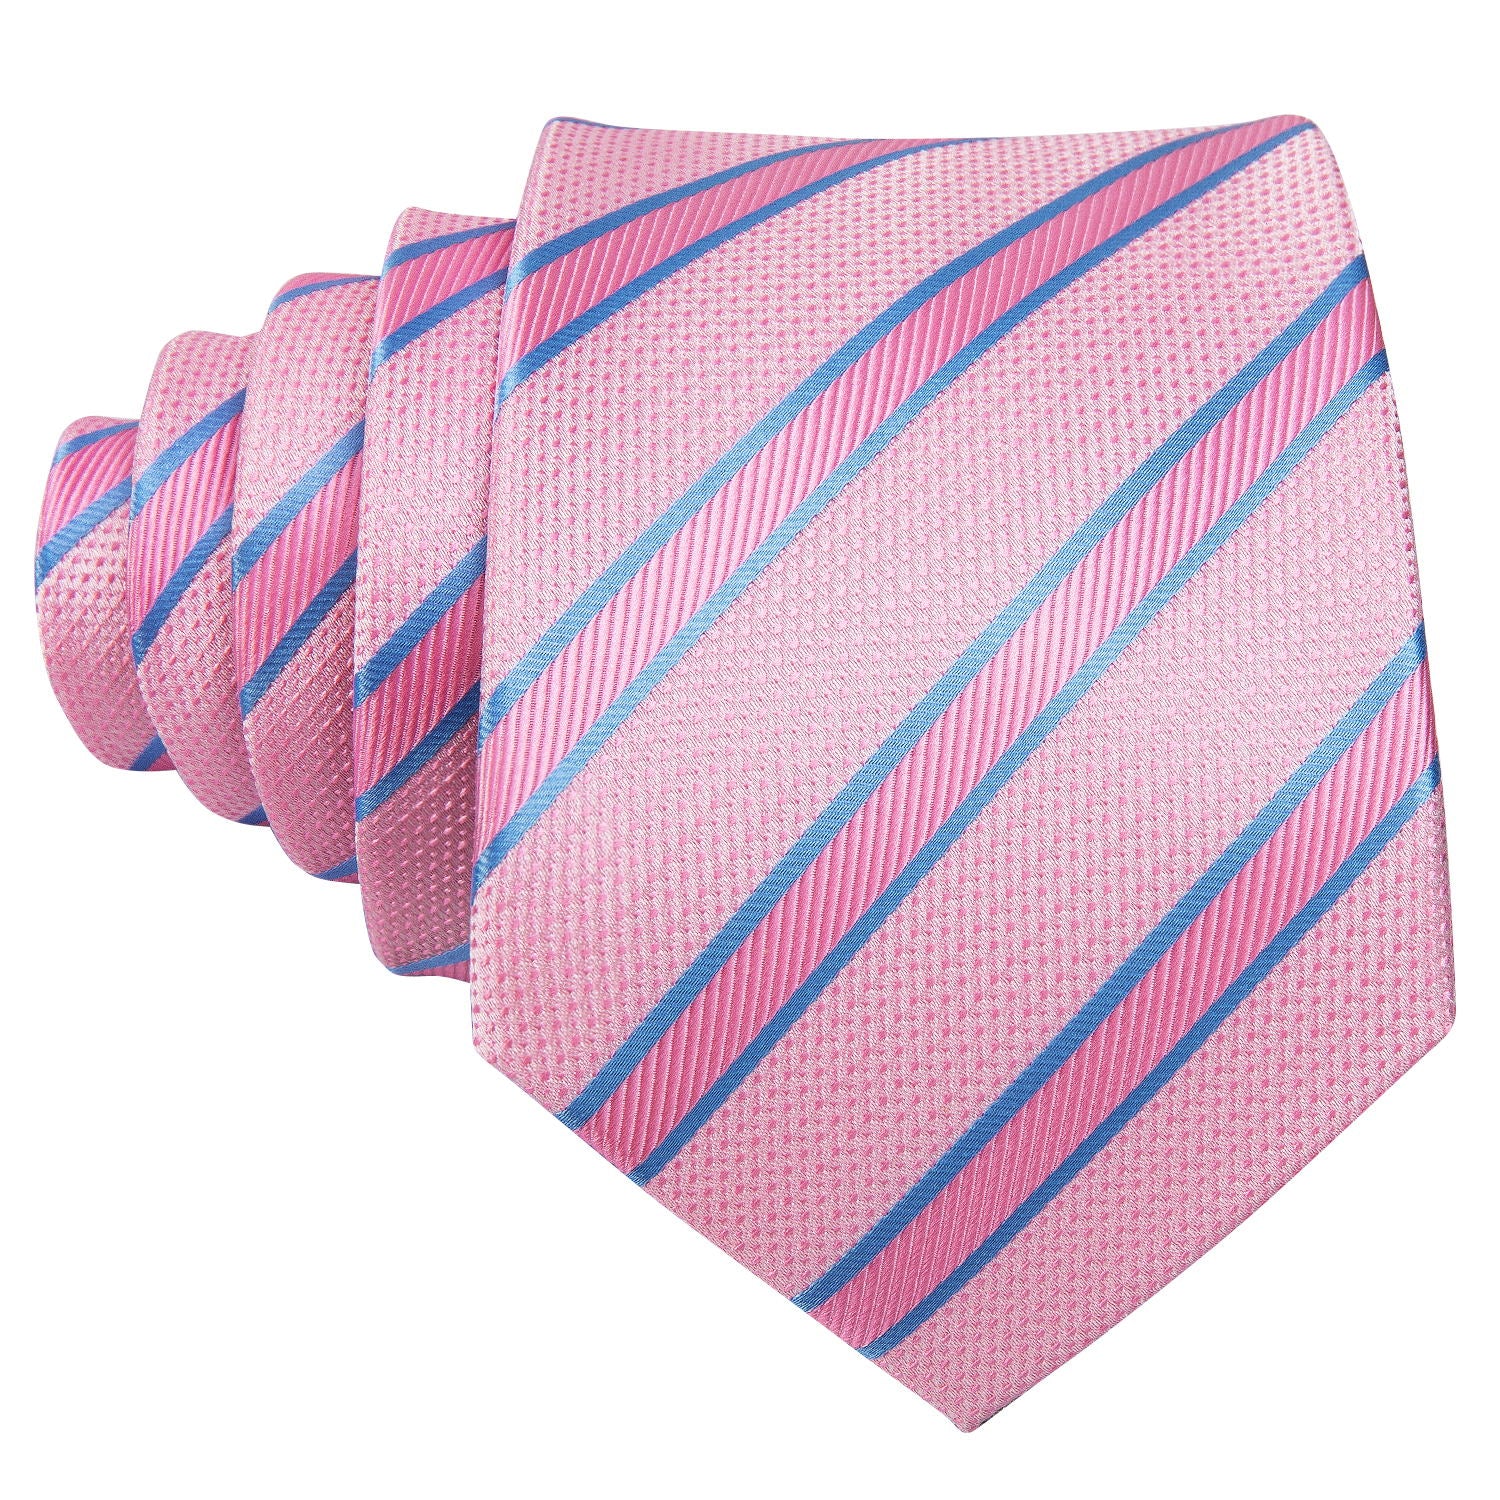 Men's wedding necktie for men pink neckteie 